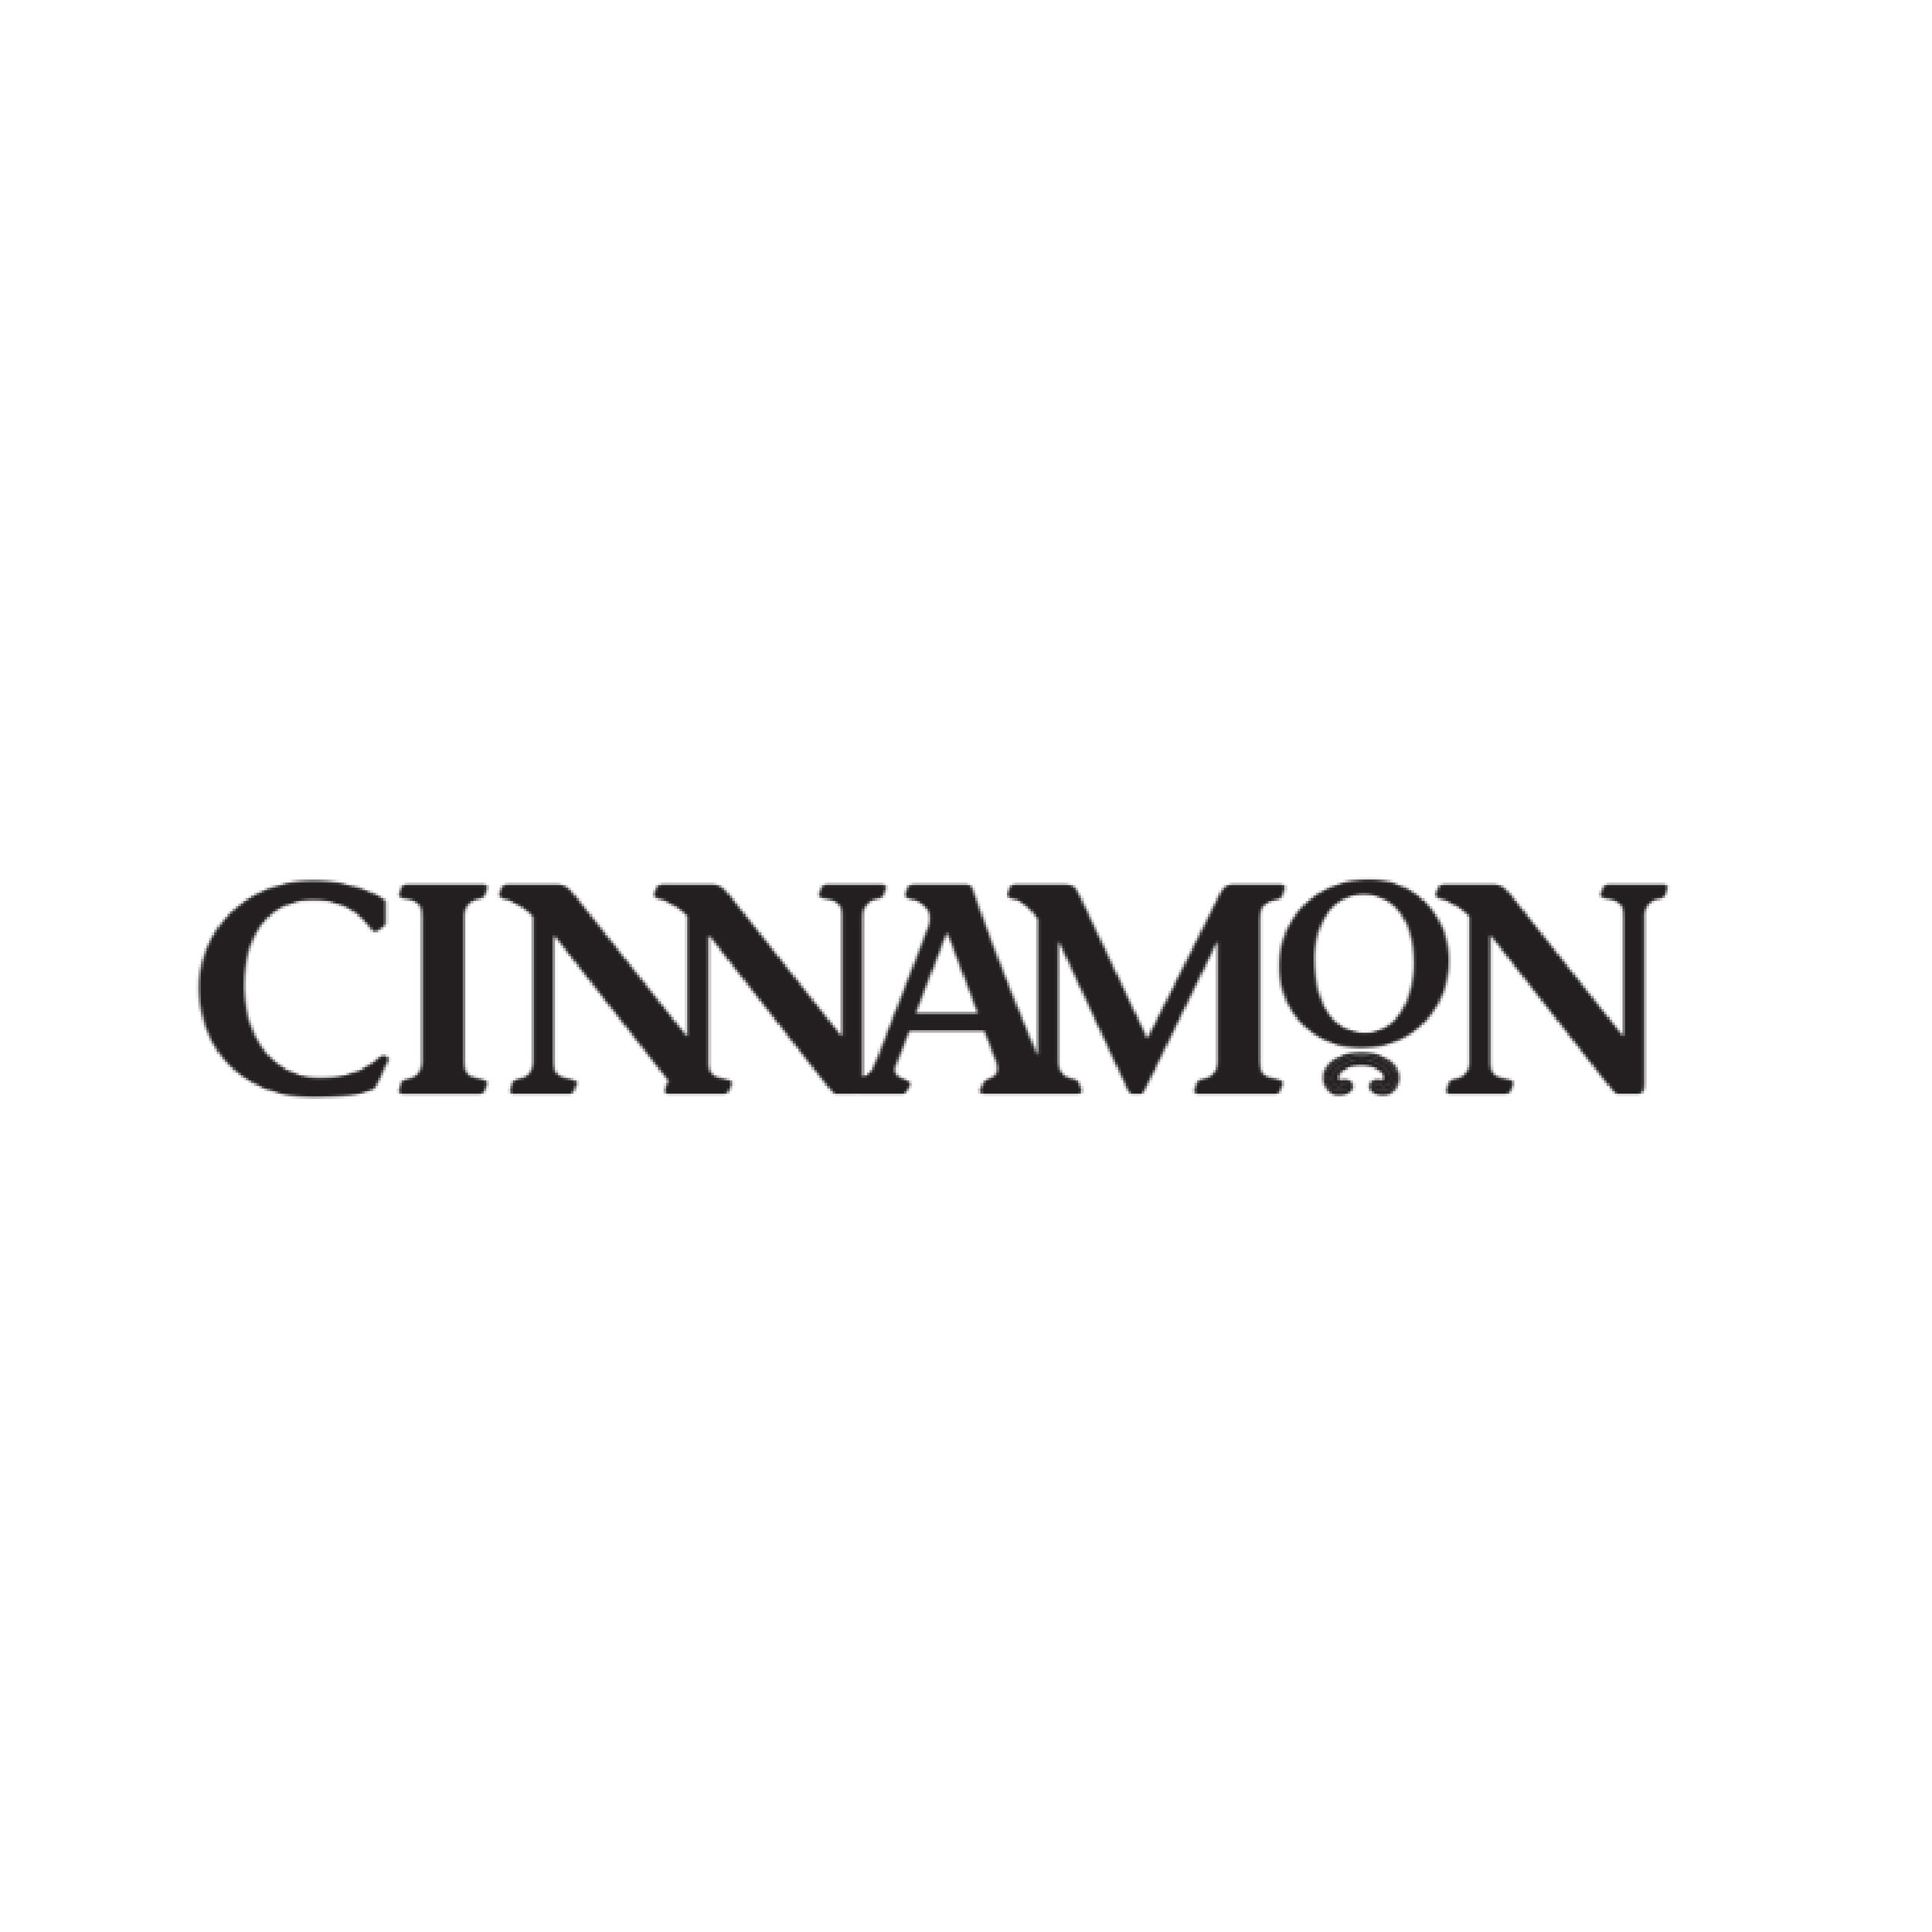 cinnamon logo-08.jpg